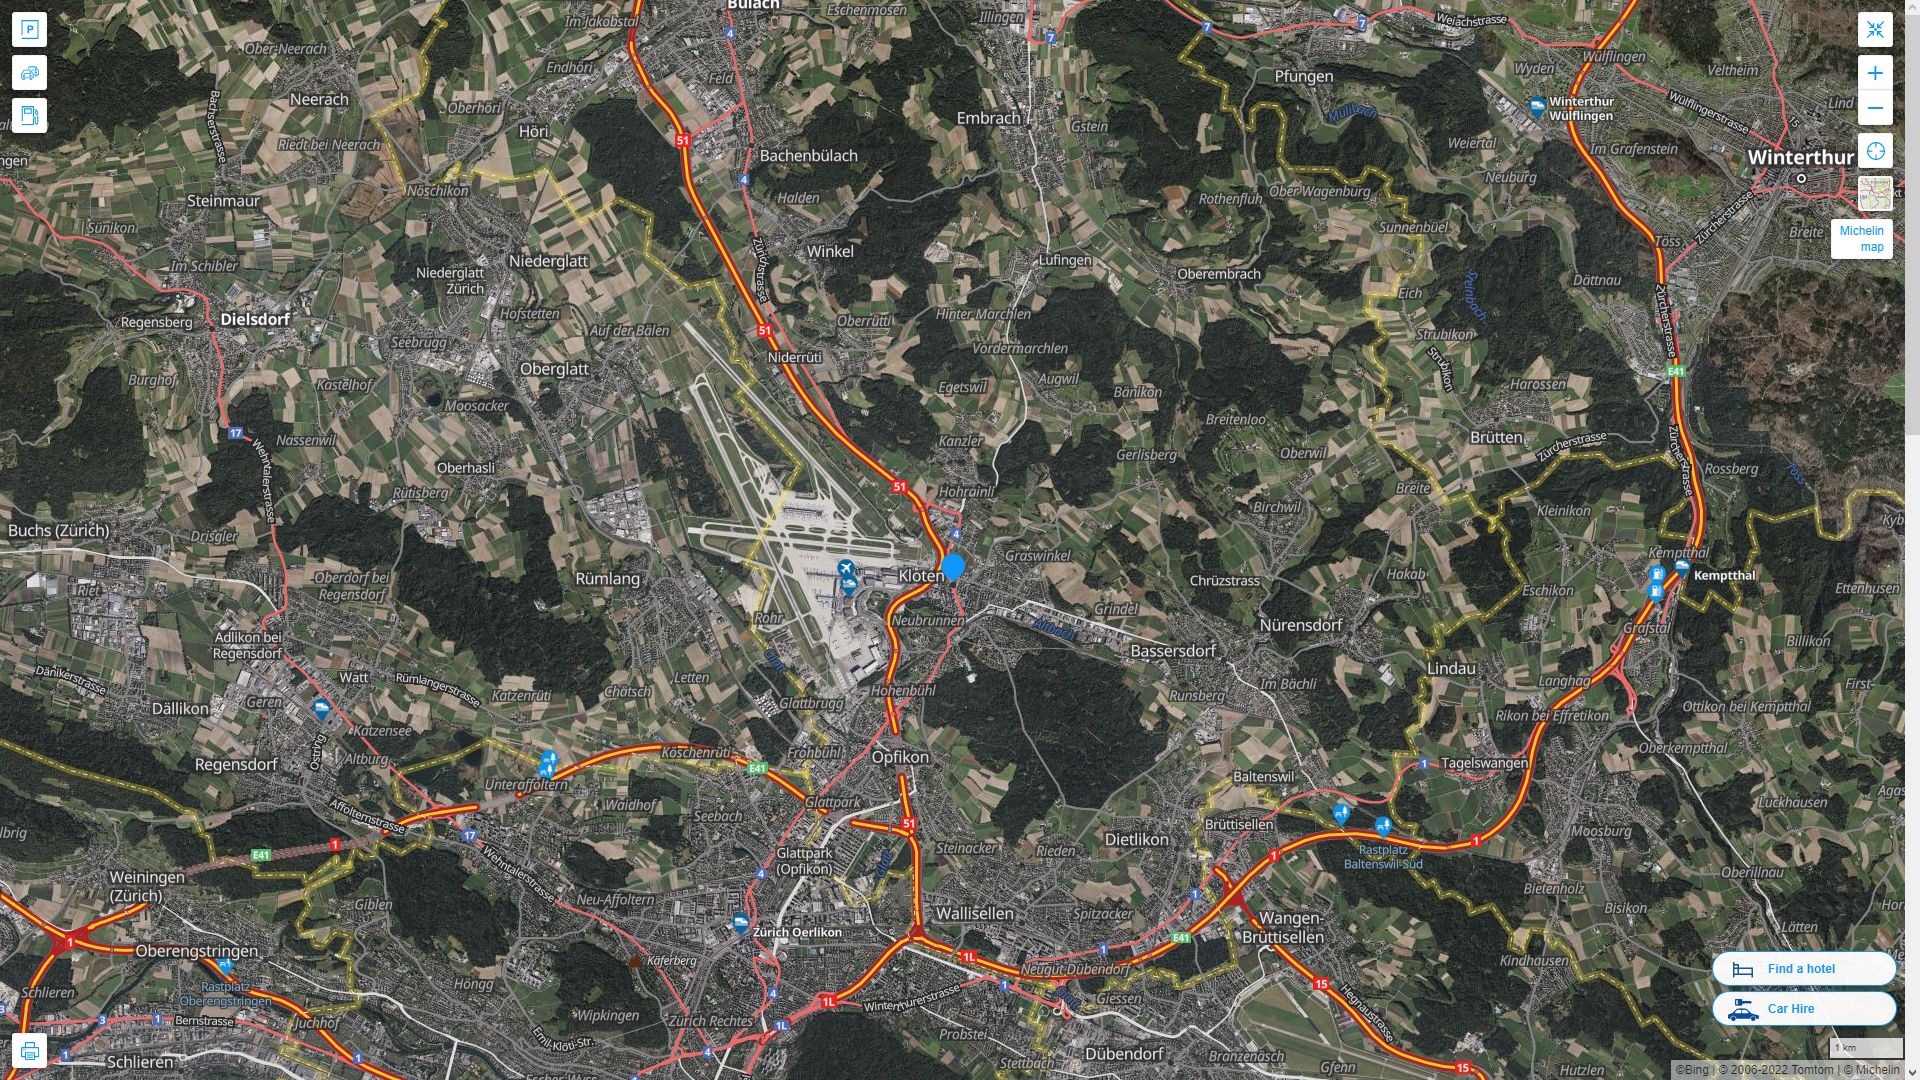 Kloten Suisse Autoroute et carte routiere avec vue satellite